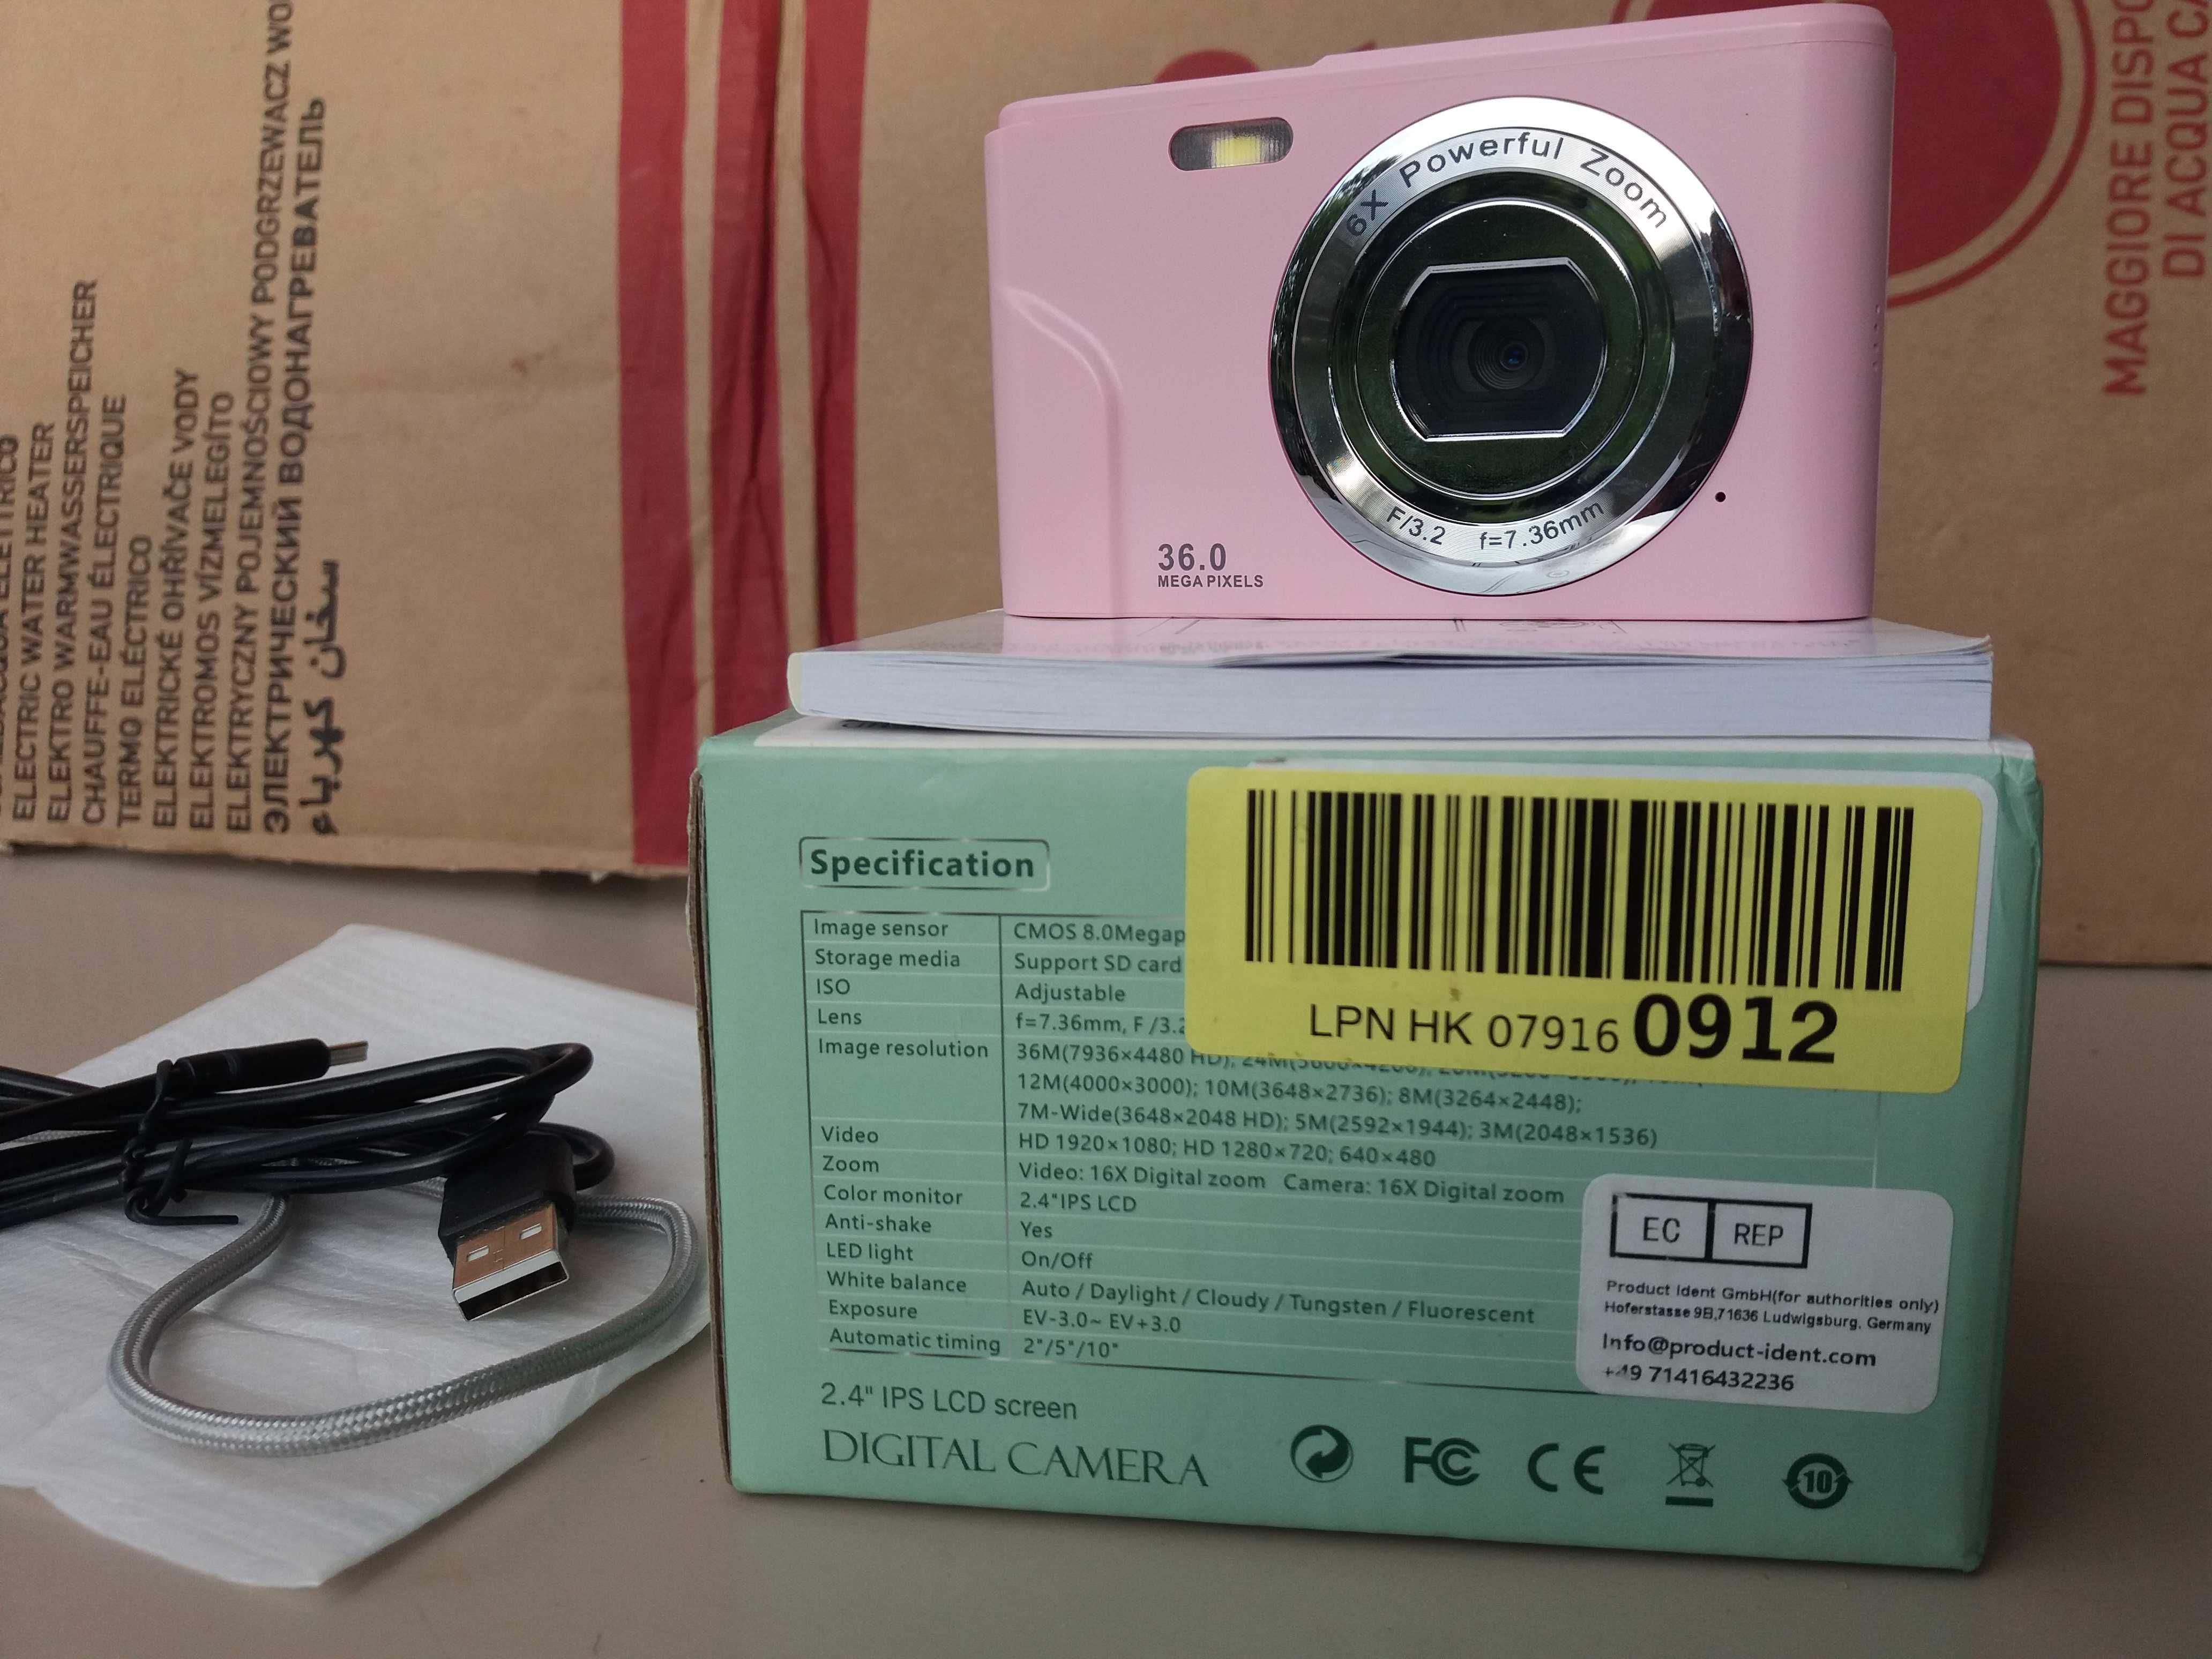 Продаётся Видеокамера новая в упаковке пр. Германия.